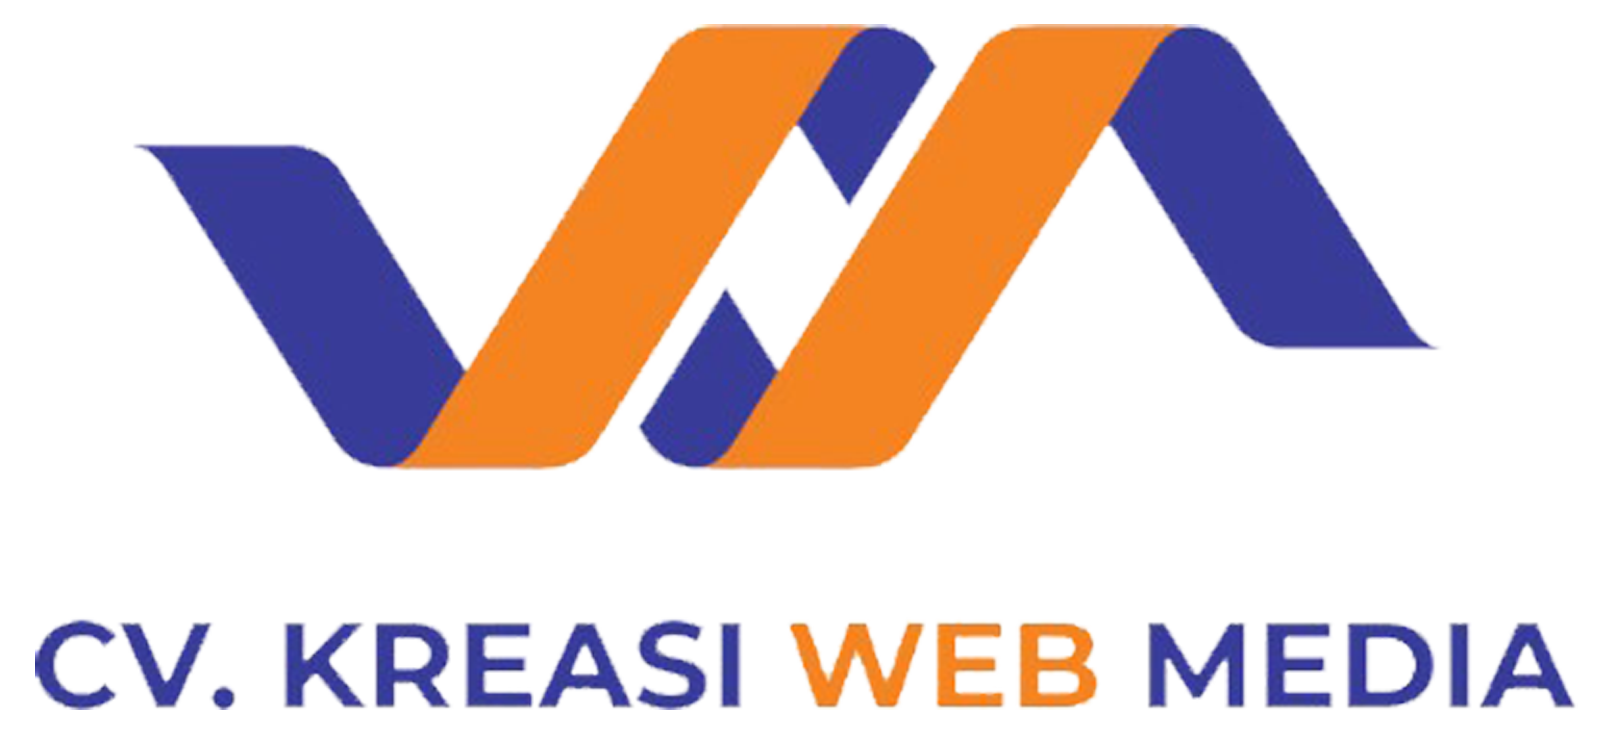 CV. Kreasi Web Media